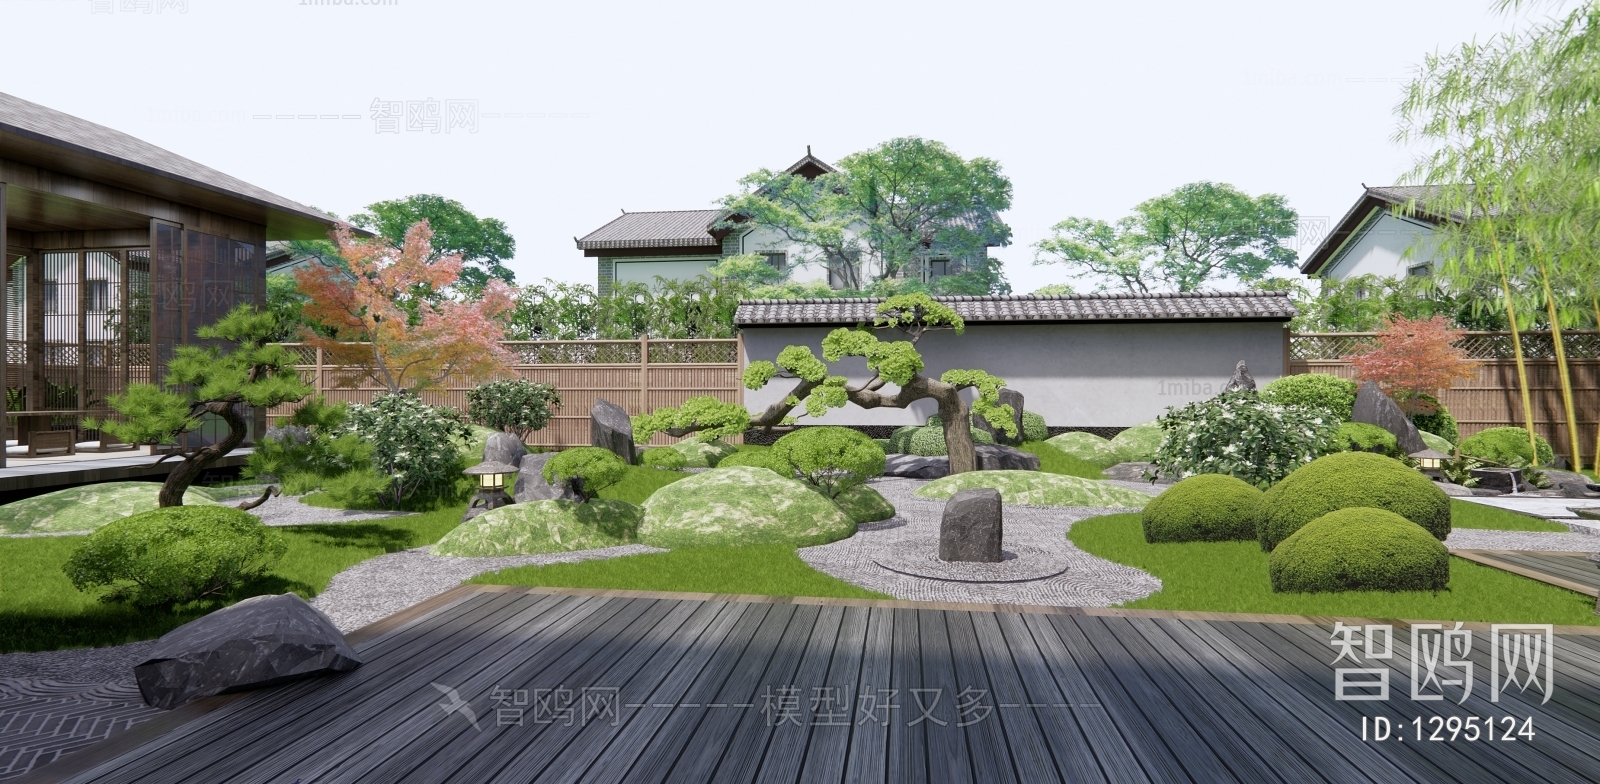 Japanese Style Courtyard/landscape